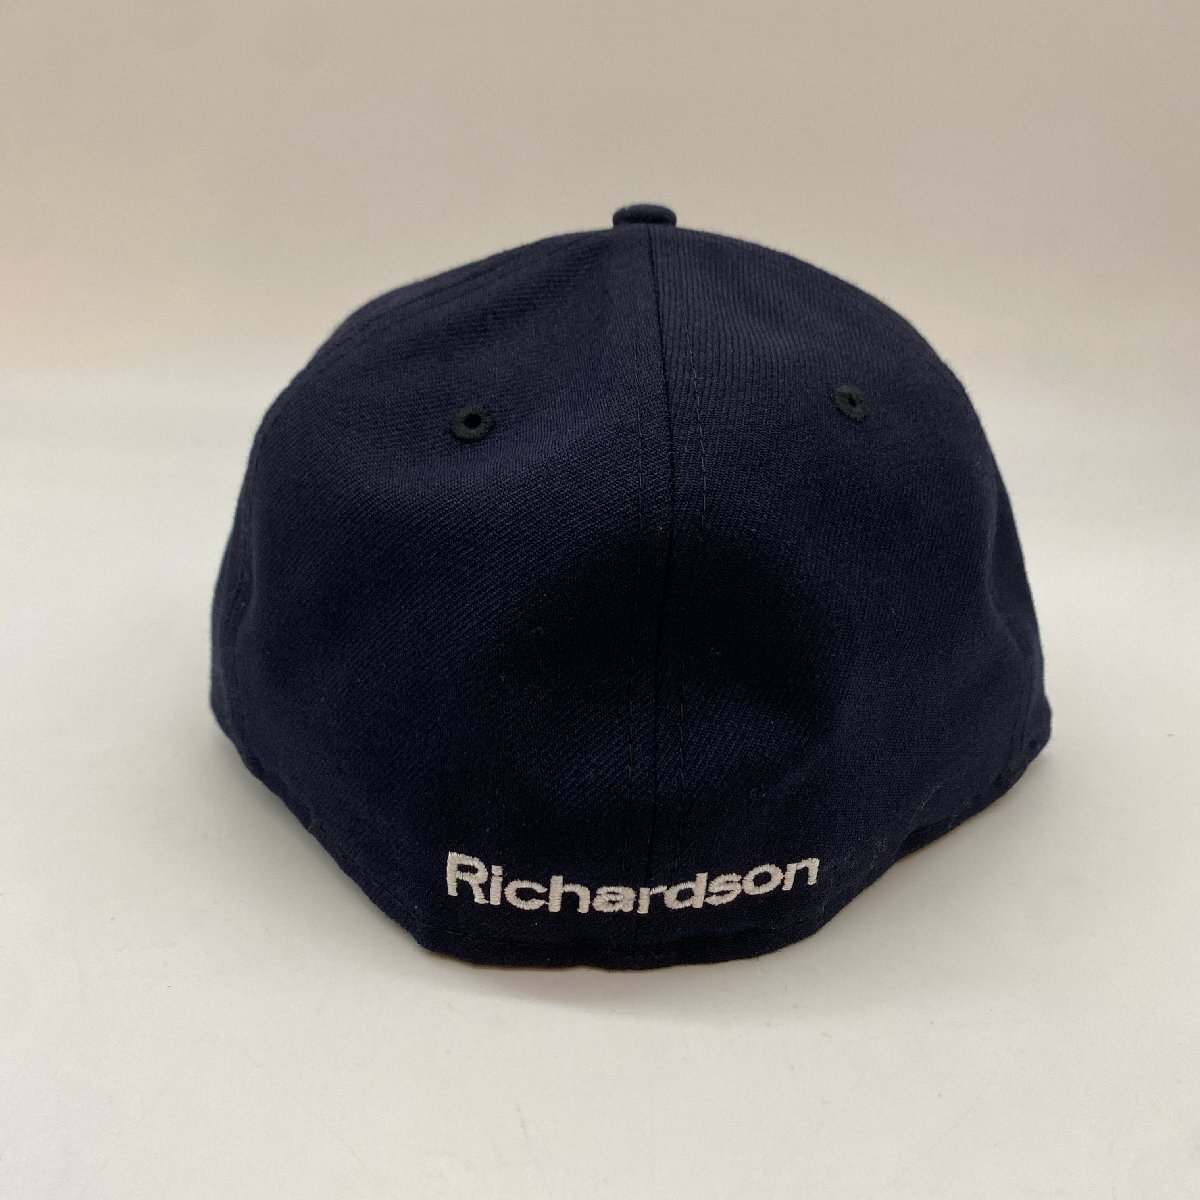 ☆NEW ERA×Richardson ニューエラ×リチャードソン☆59FIFTY コラボ メンズ刺繍キャップ 帽子 Collaboration men's embroidery cap hat_画像5